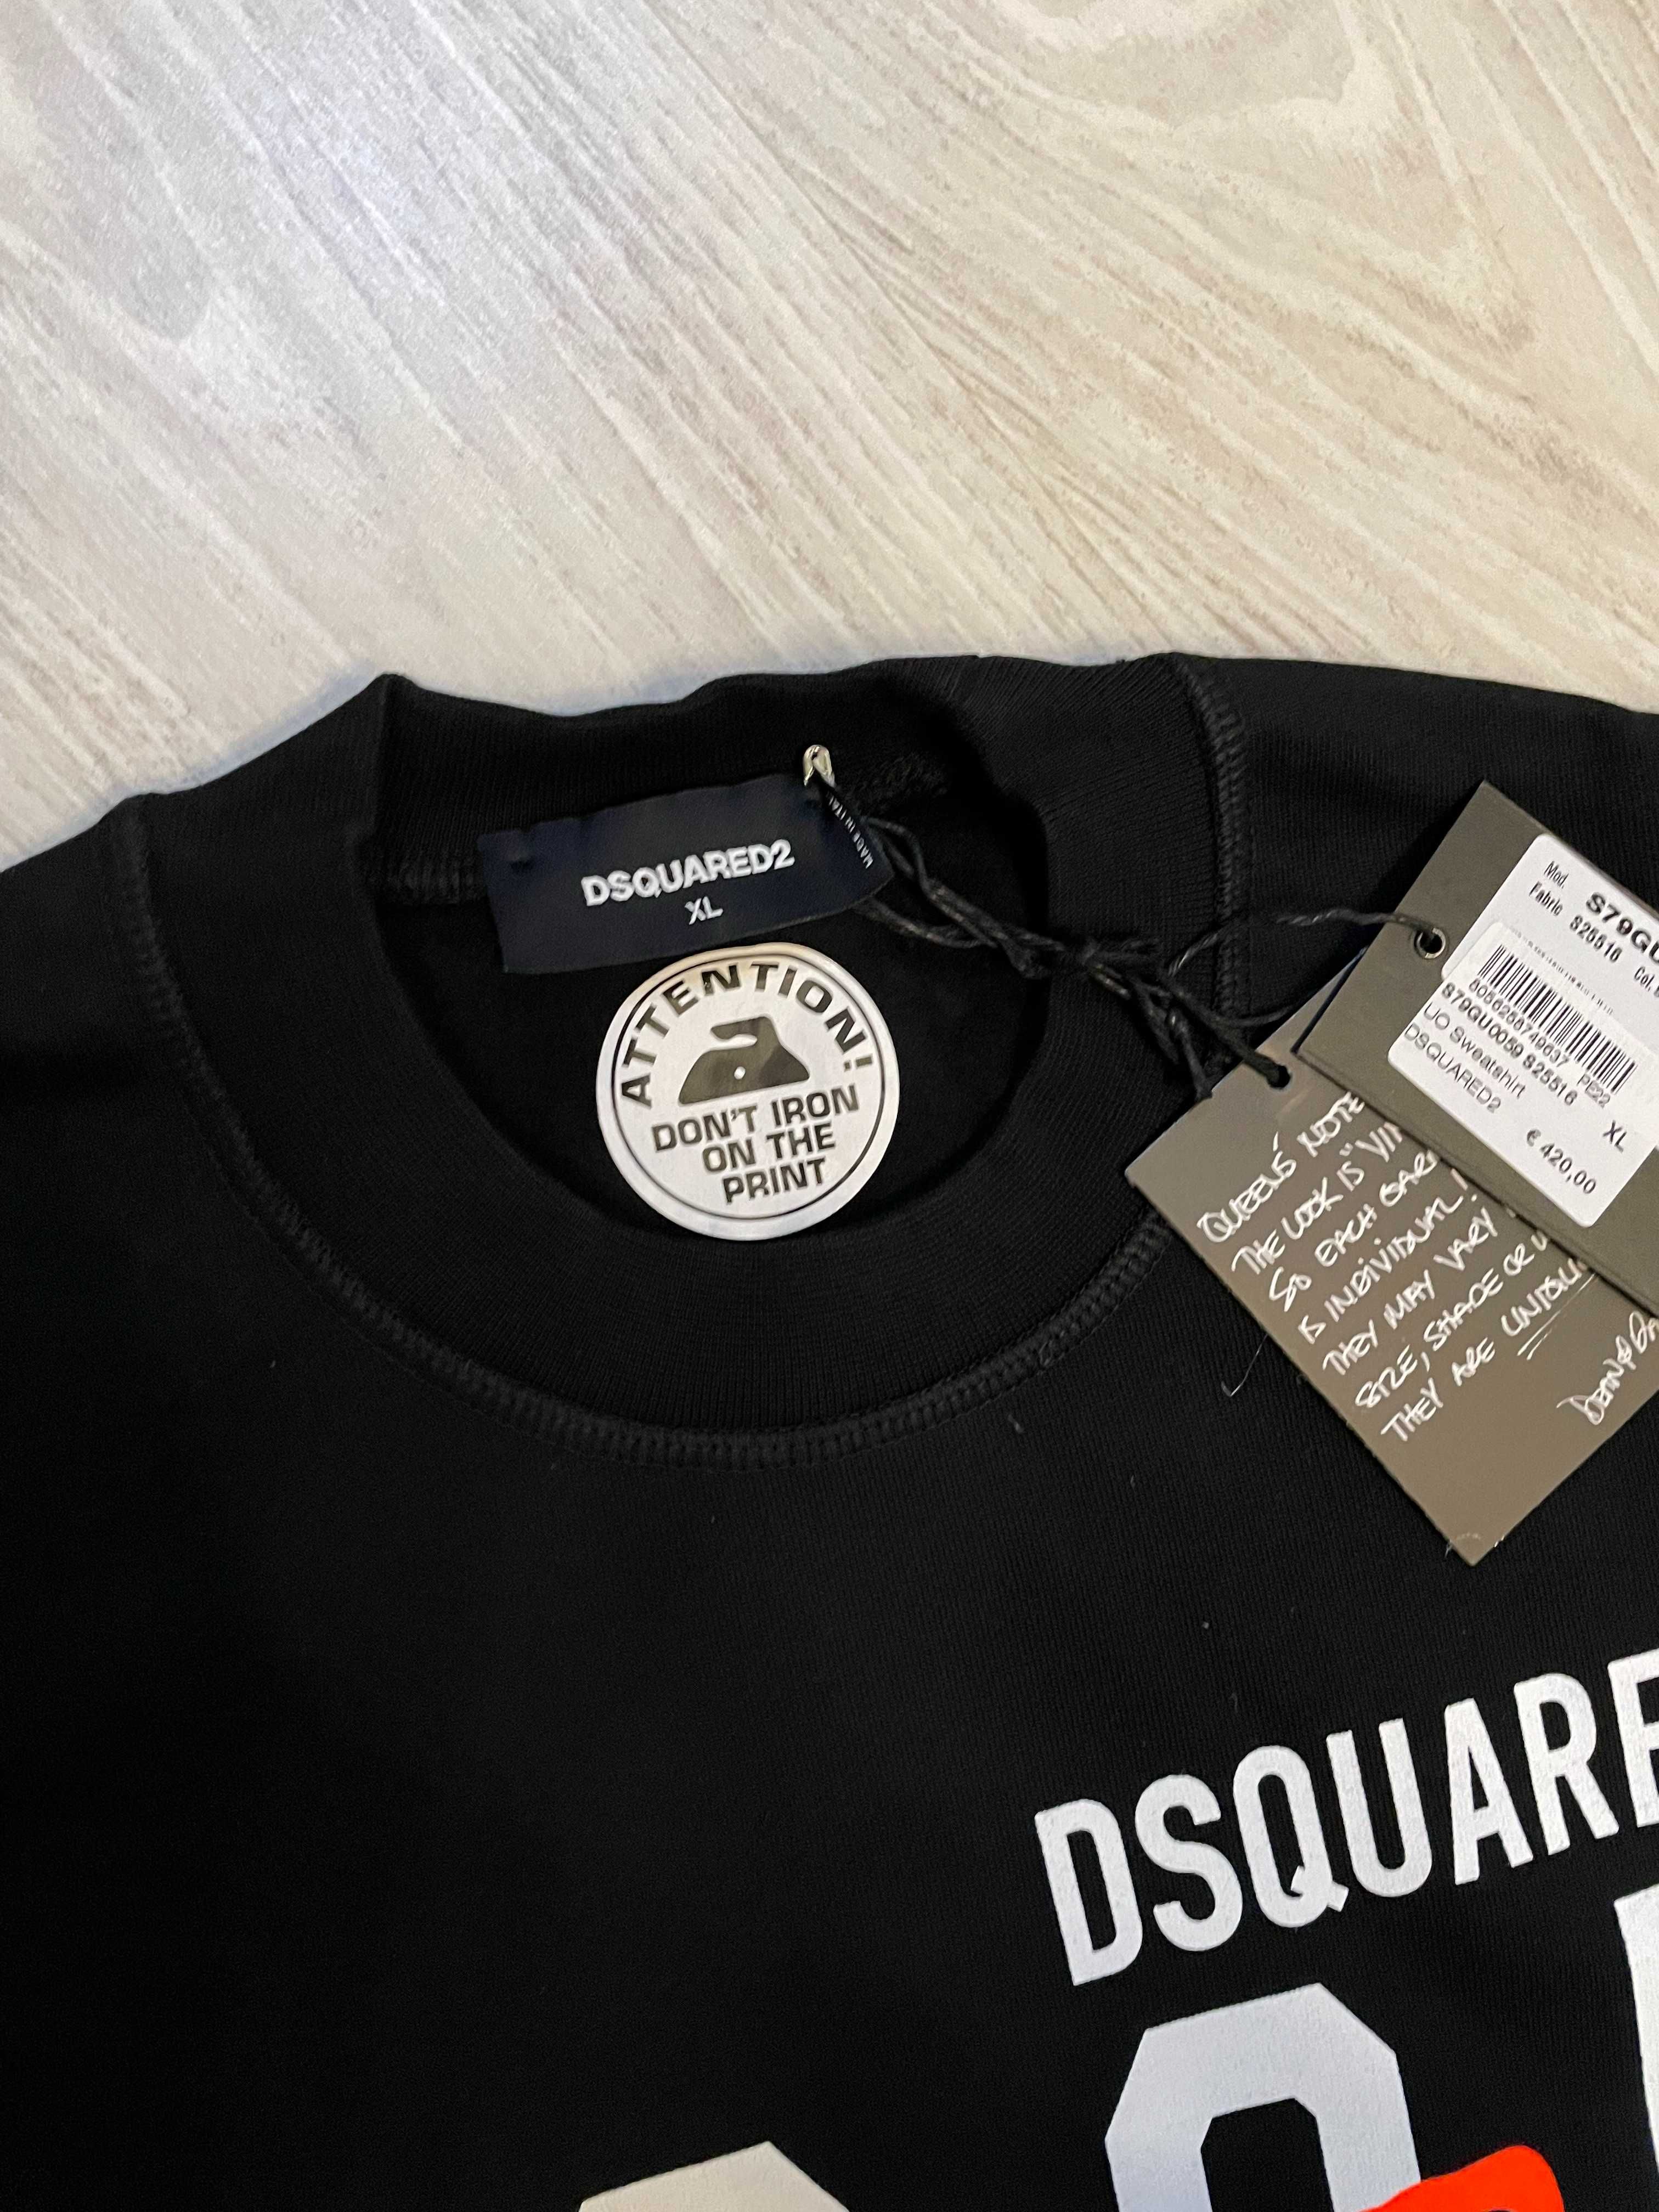 Dsquared2 bluza XL, retail 420 euro